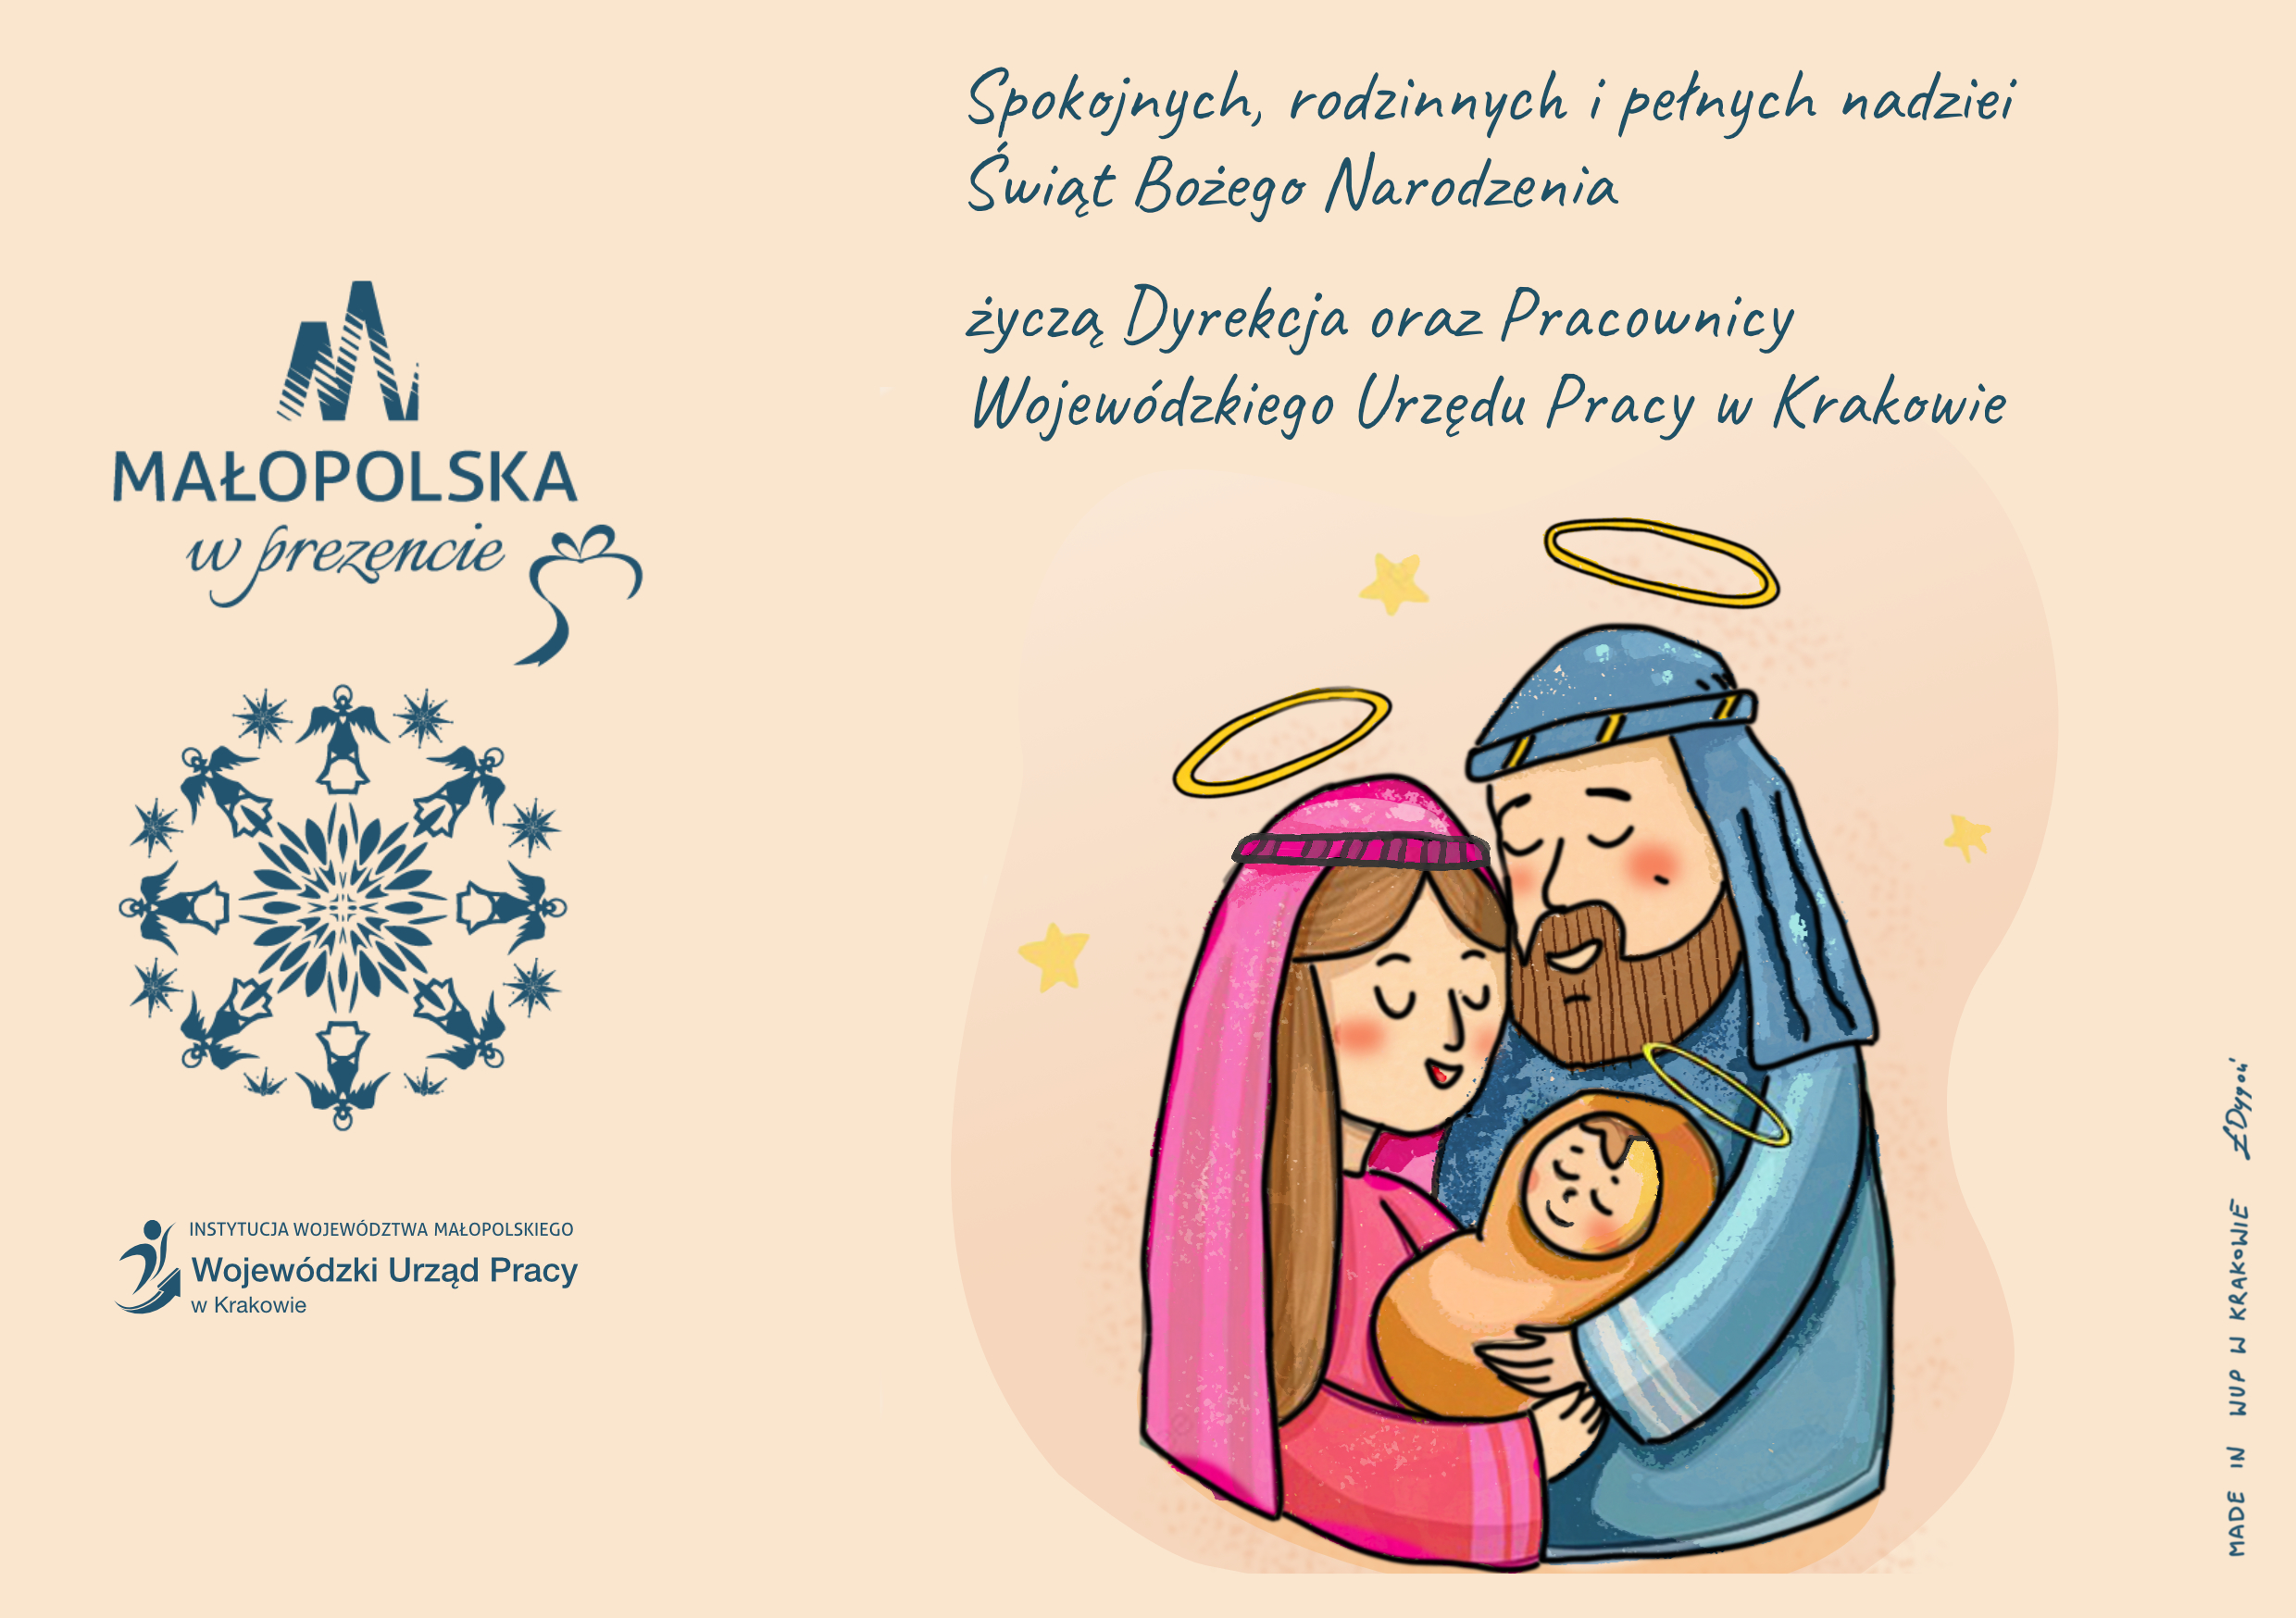 Spokojnych, rodzinnych i pełnych nadziei Świąt Bożego Narodzenia życzą Dyrekcja i Pracownicy Wojewódzkiego Urzędu Pracy w Krakowie